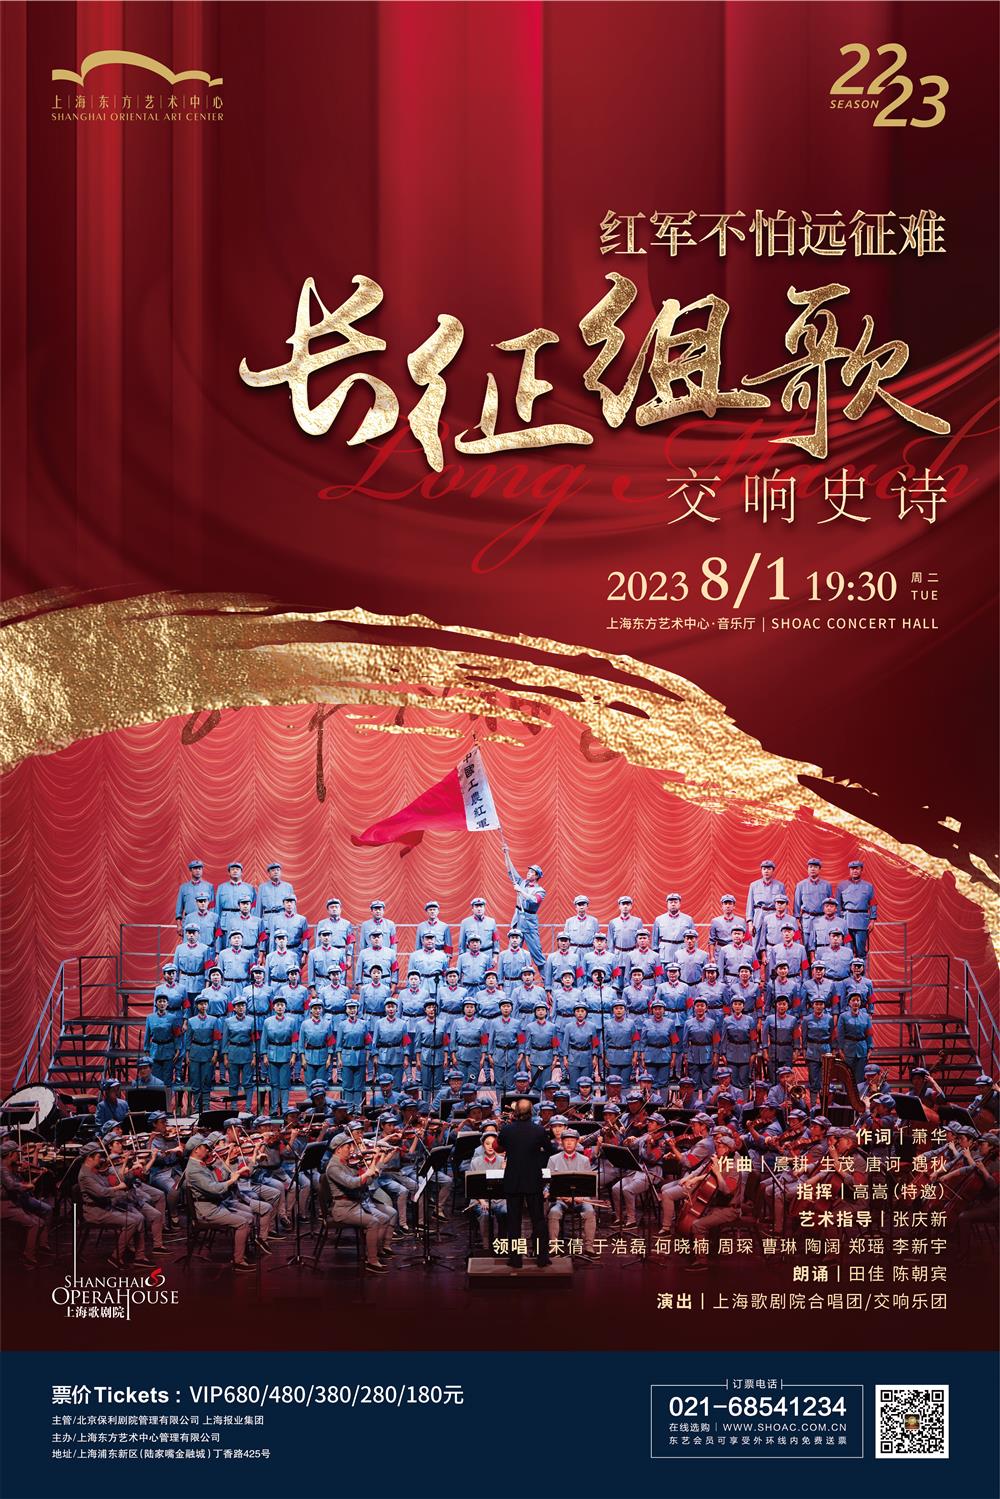 在音乐中回顾澎湃岁月,红色经典民族歌剧、交响史诗《长征组歌》歌唱家|音乐会。7月1日|歌剧